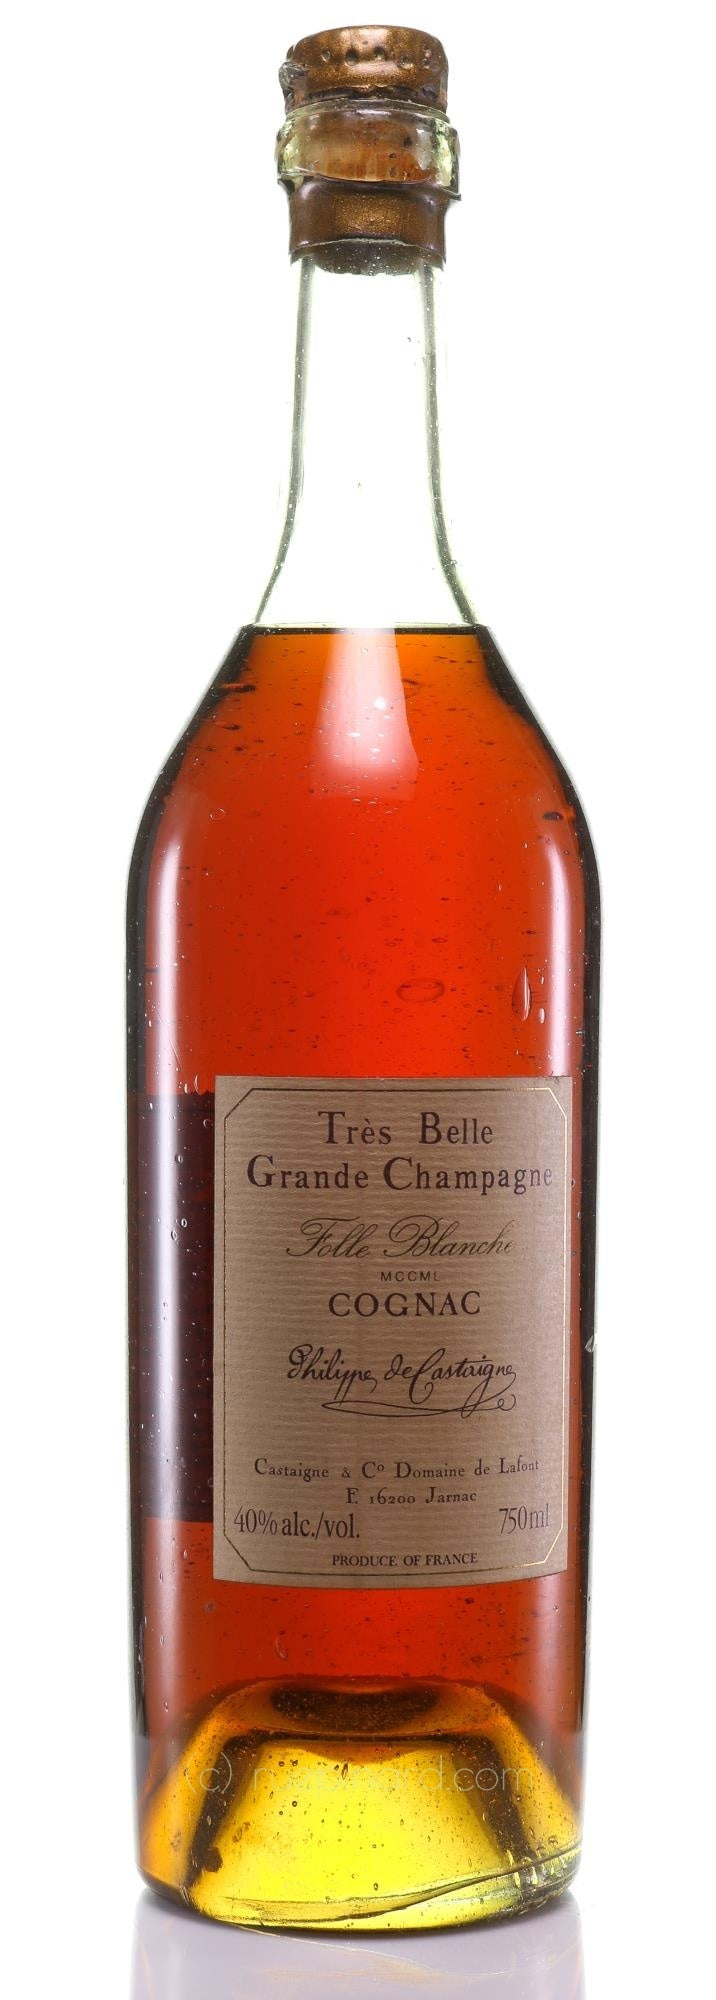 Philippe de Castaigne 1850 Cognac Folle Blanche Tres Belle Grande Champagne Pre-Phelloxera - Rue Pinard